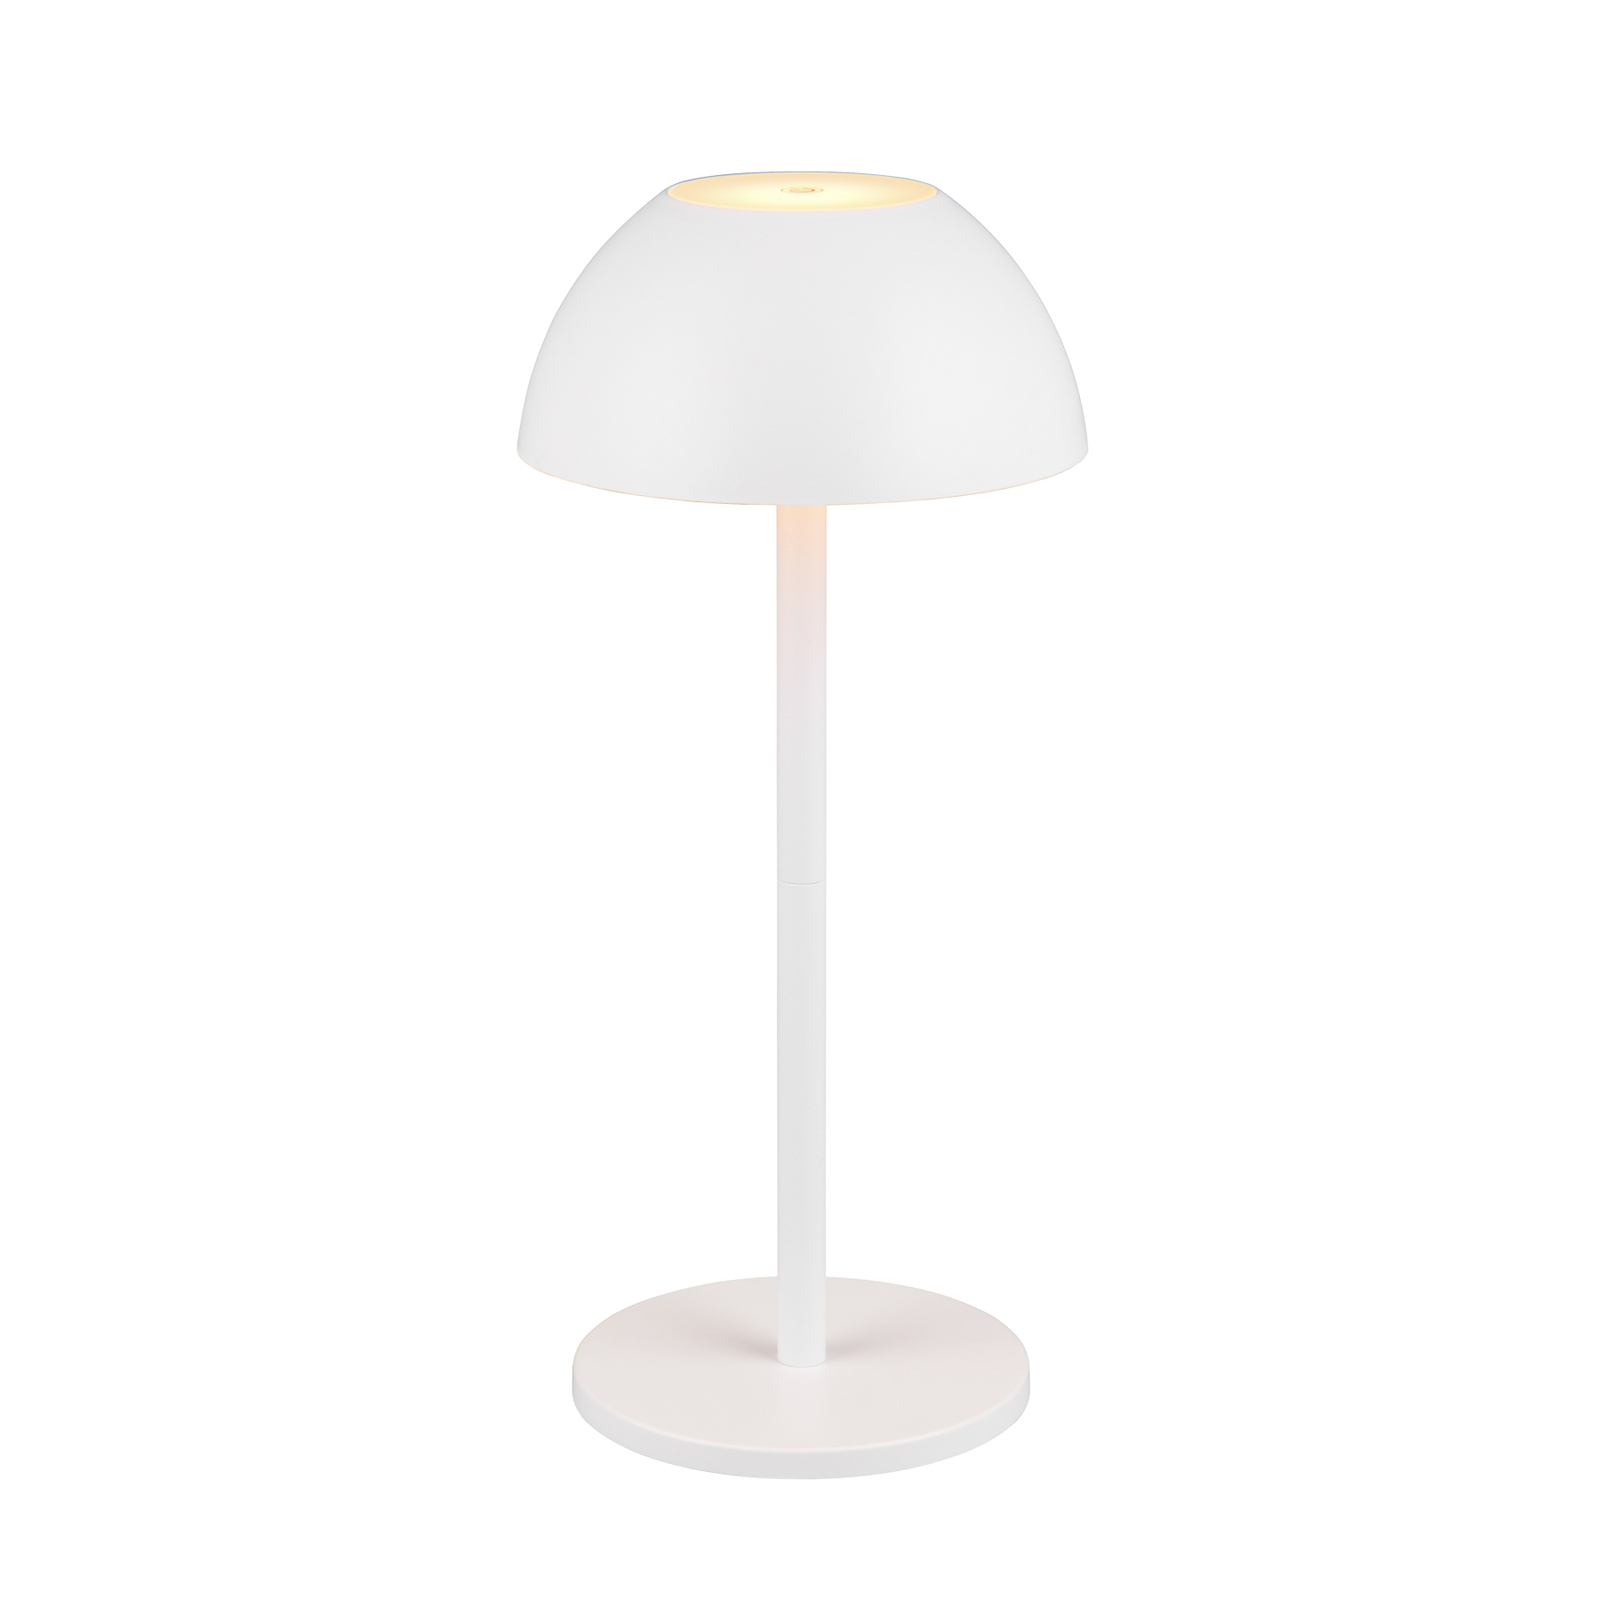 Ricardo LED table lamp, white, height 30 cm, plastic